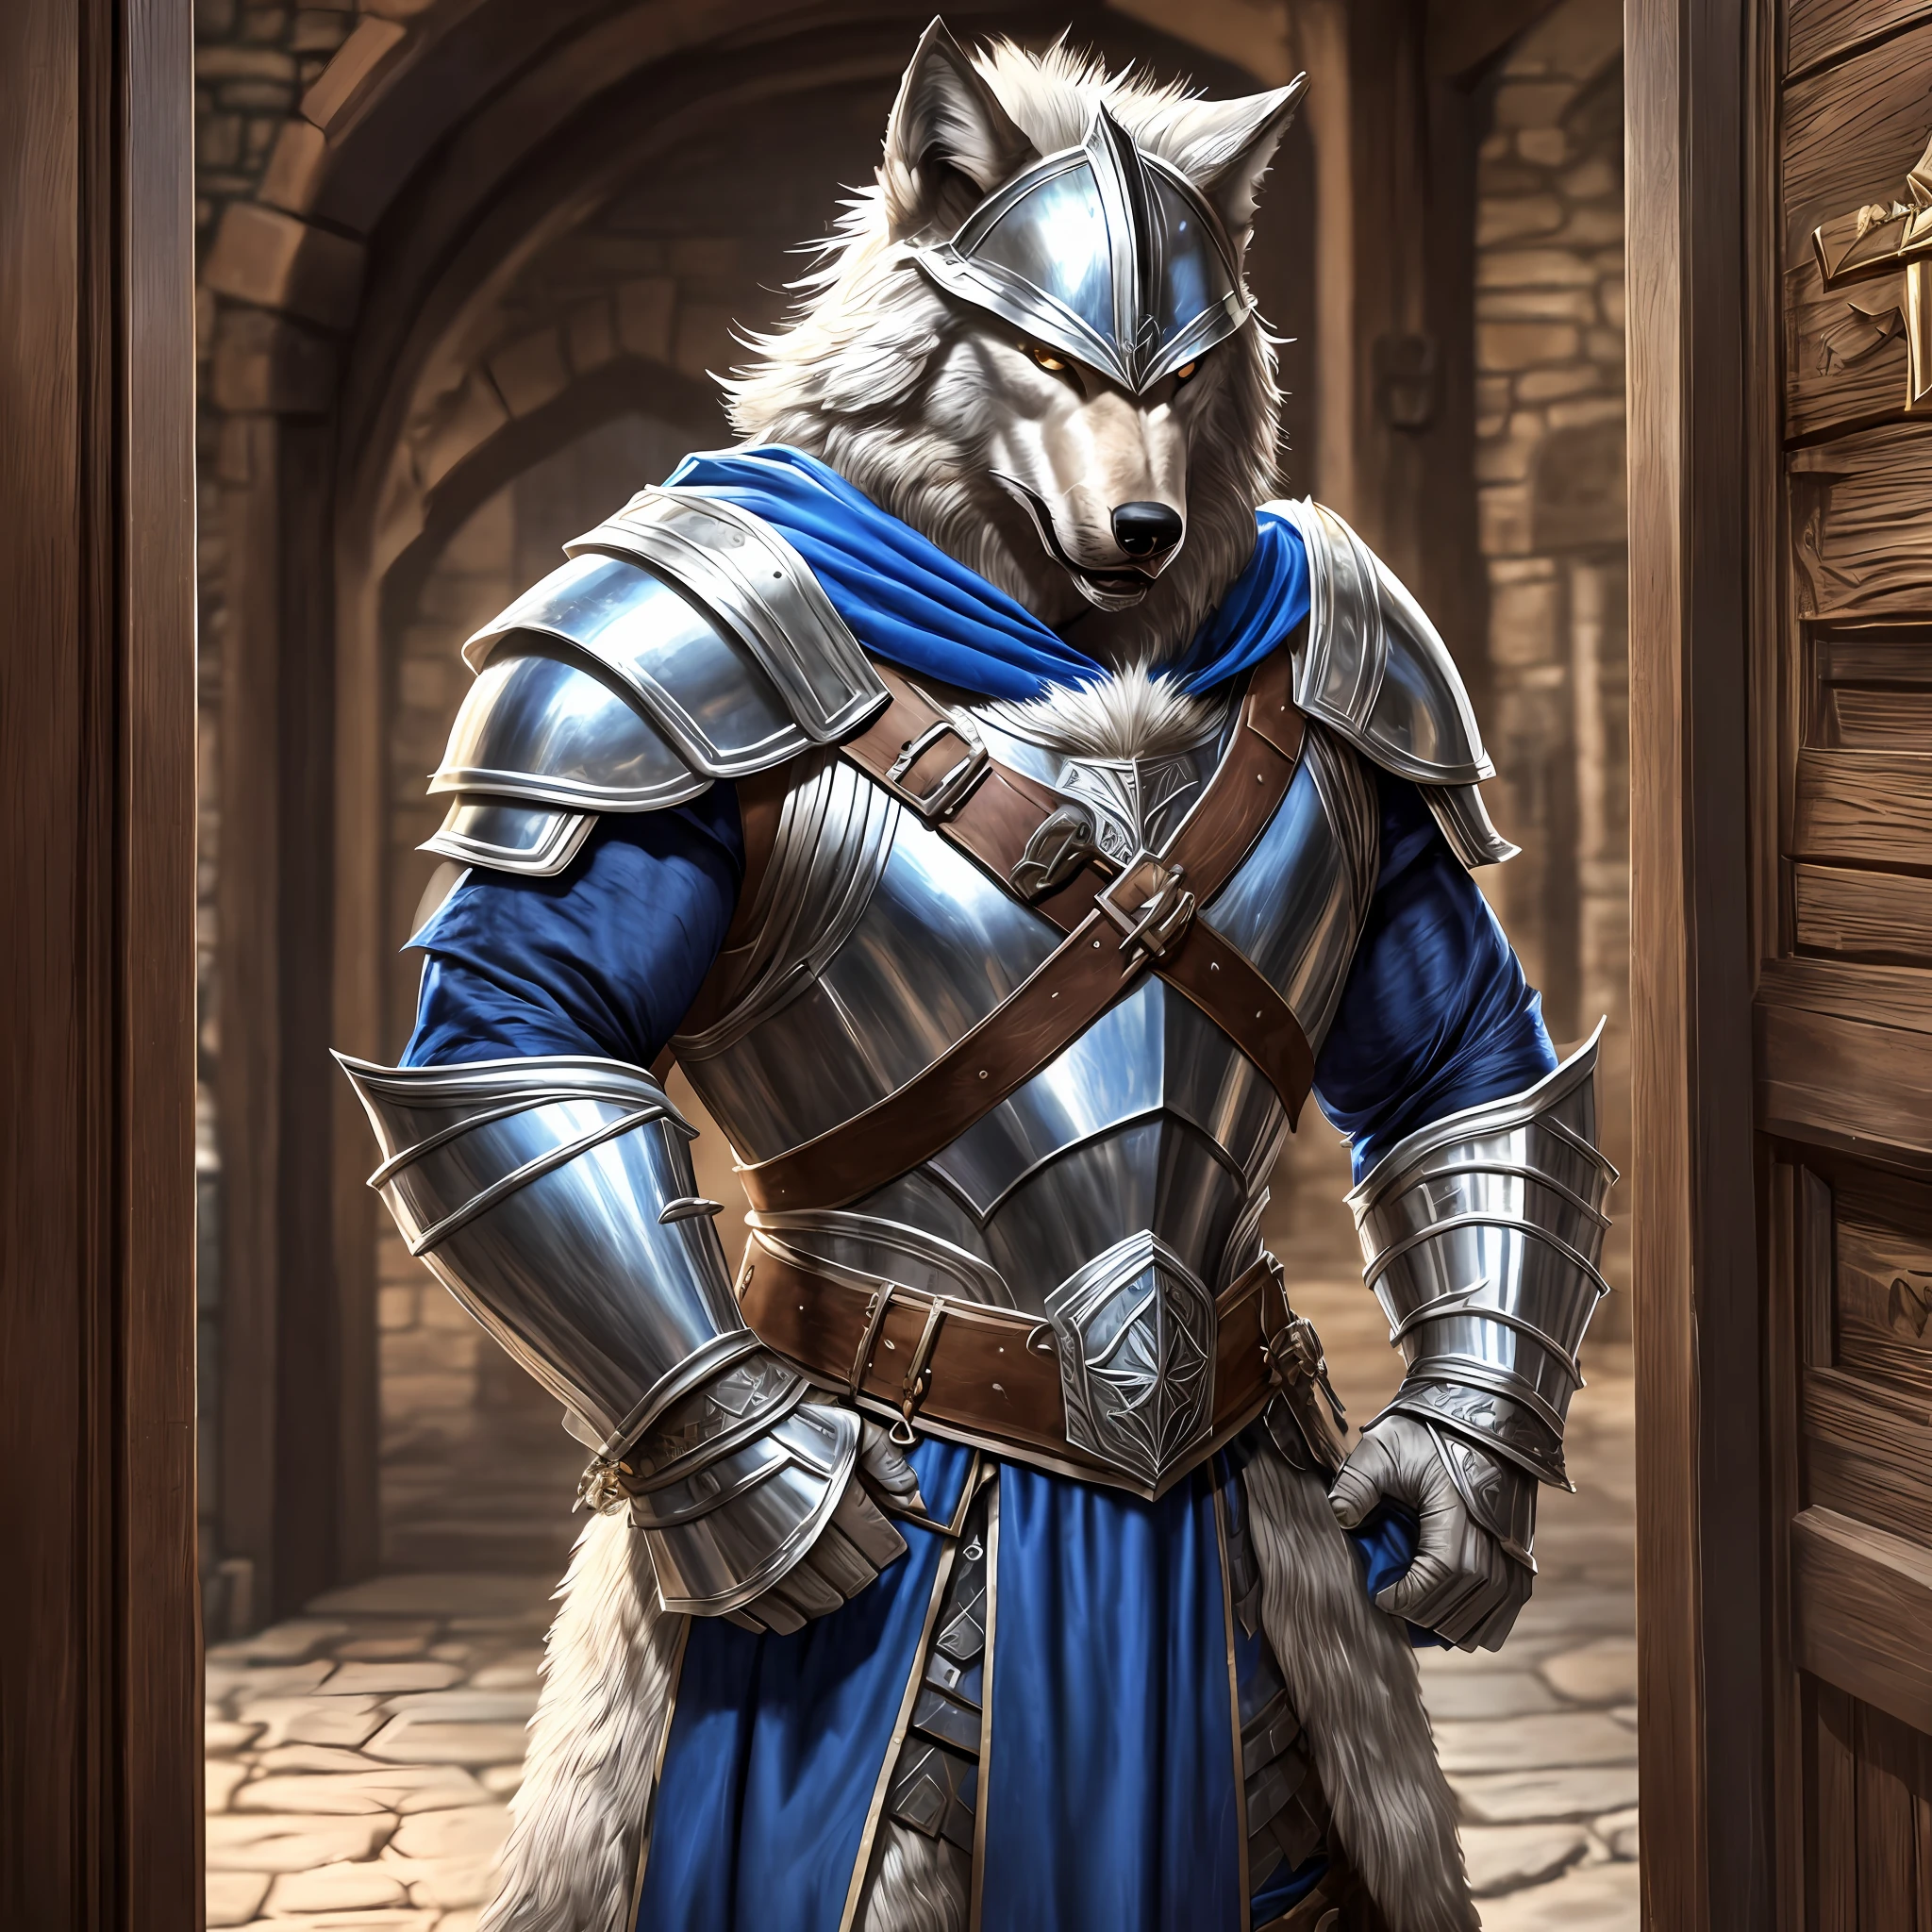 Homem alto e musculoso jovem, largo, vestindo uma armadura medieval com capacete de lobo, ombreiras de lobo, peitoral prateado e capa azul peluda, irritado com a porta de entrada de uma taberna, realista, Full HD, melhor qualidade